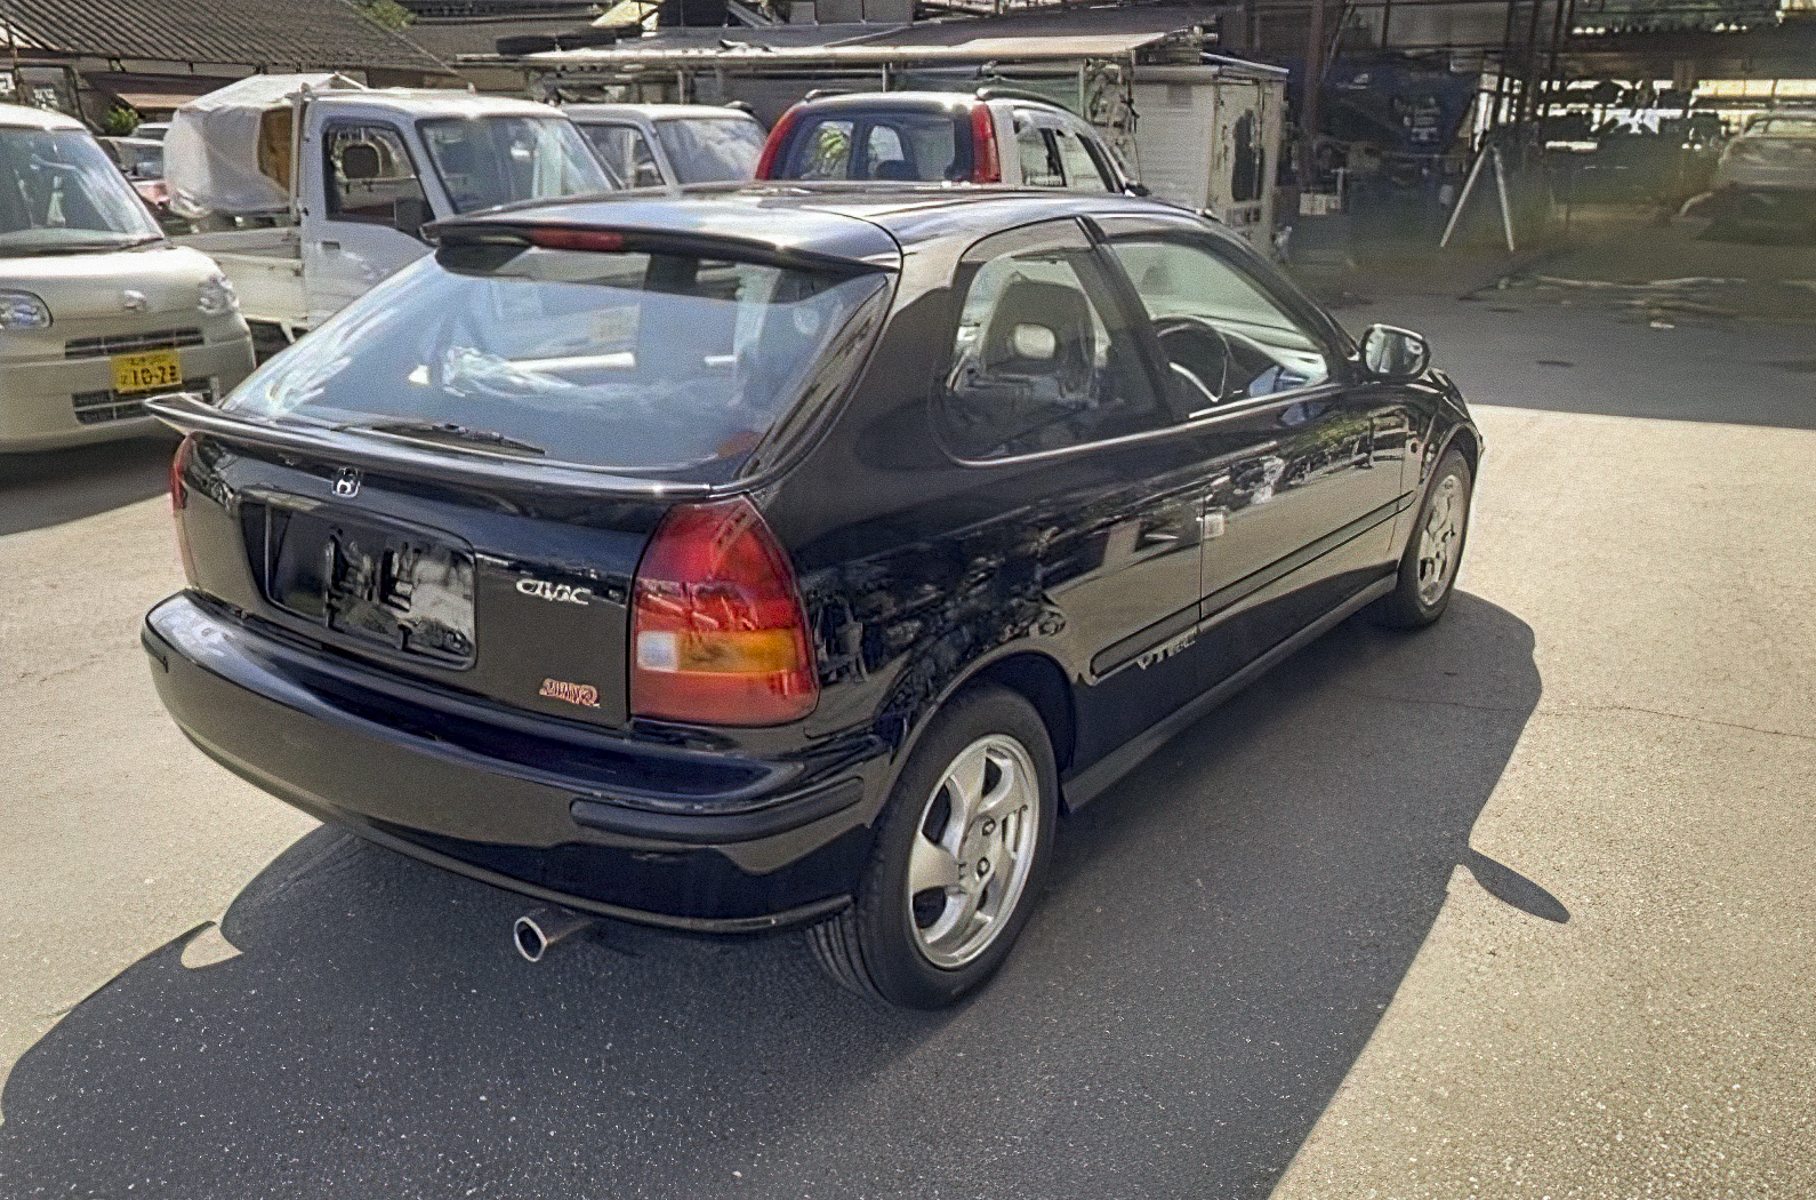 Найдена Honda Civic из 90-х, которую новой на всю жизнь забыли в гараже